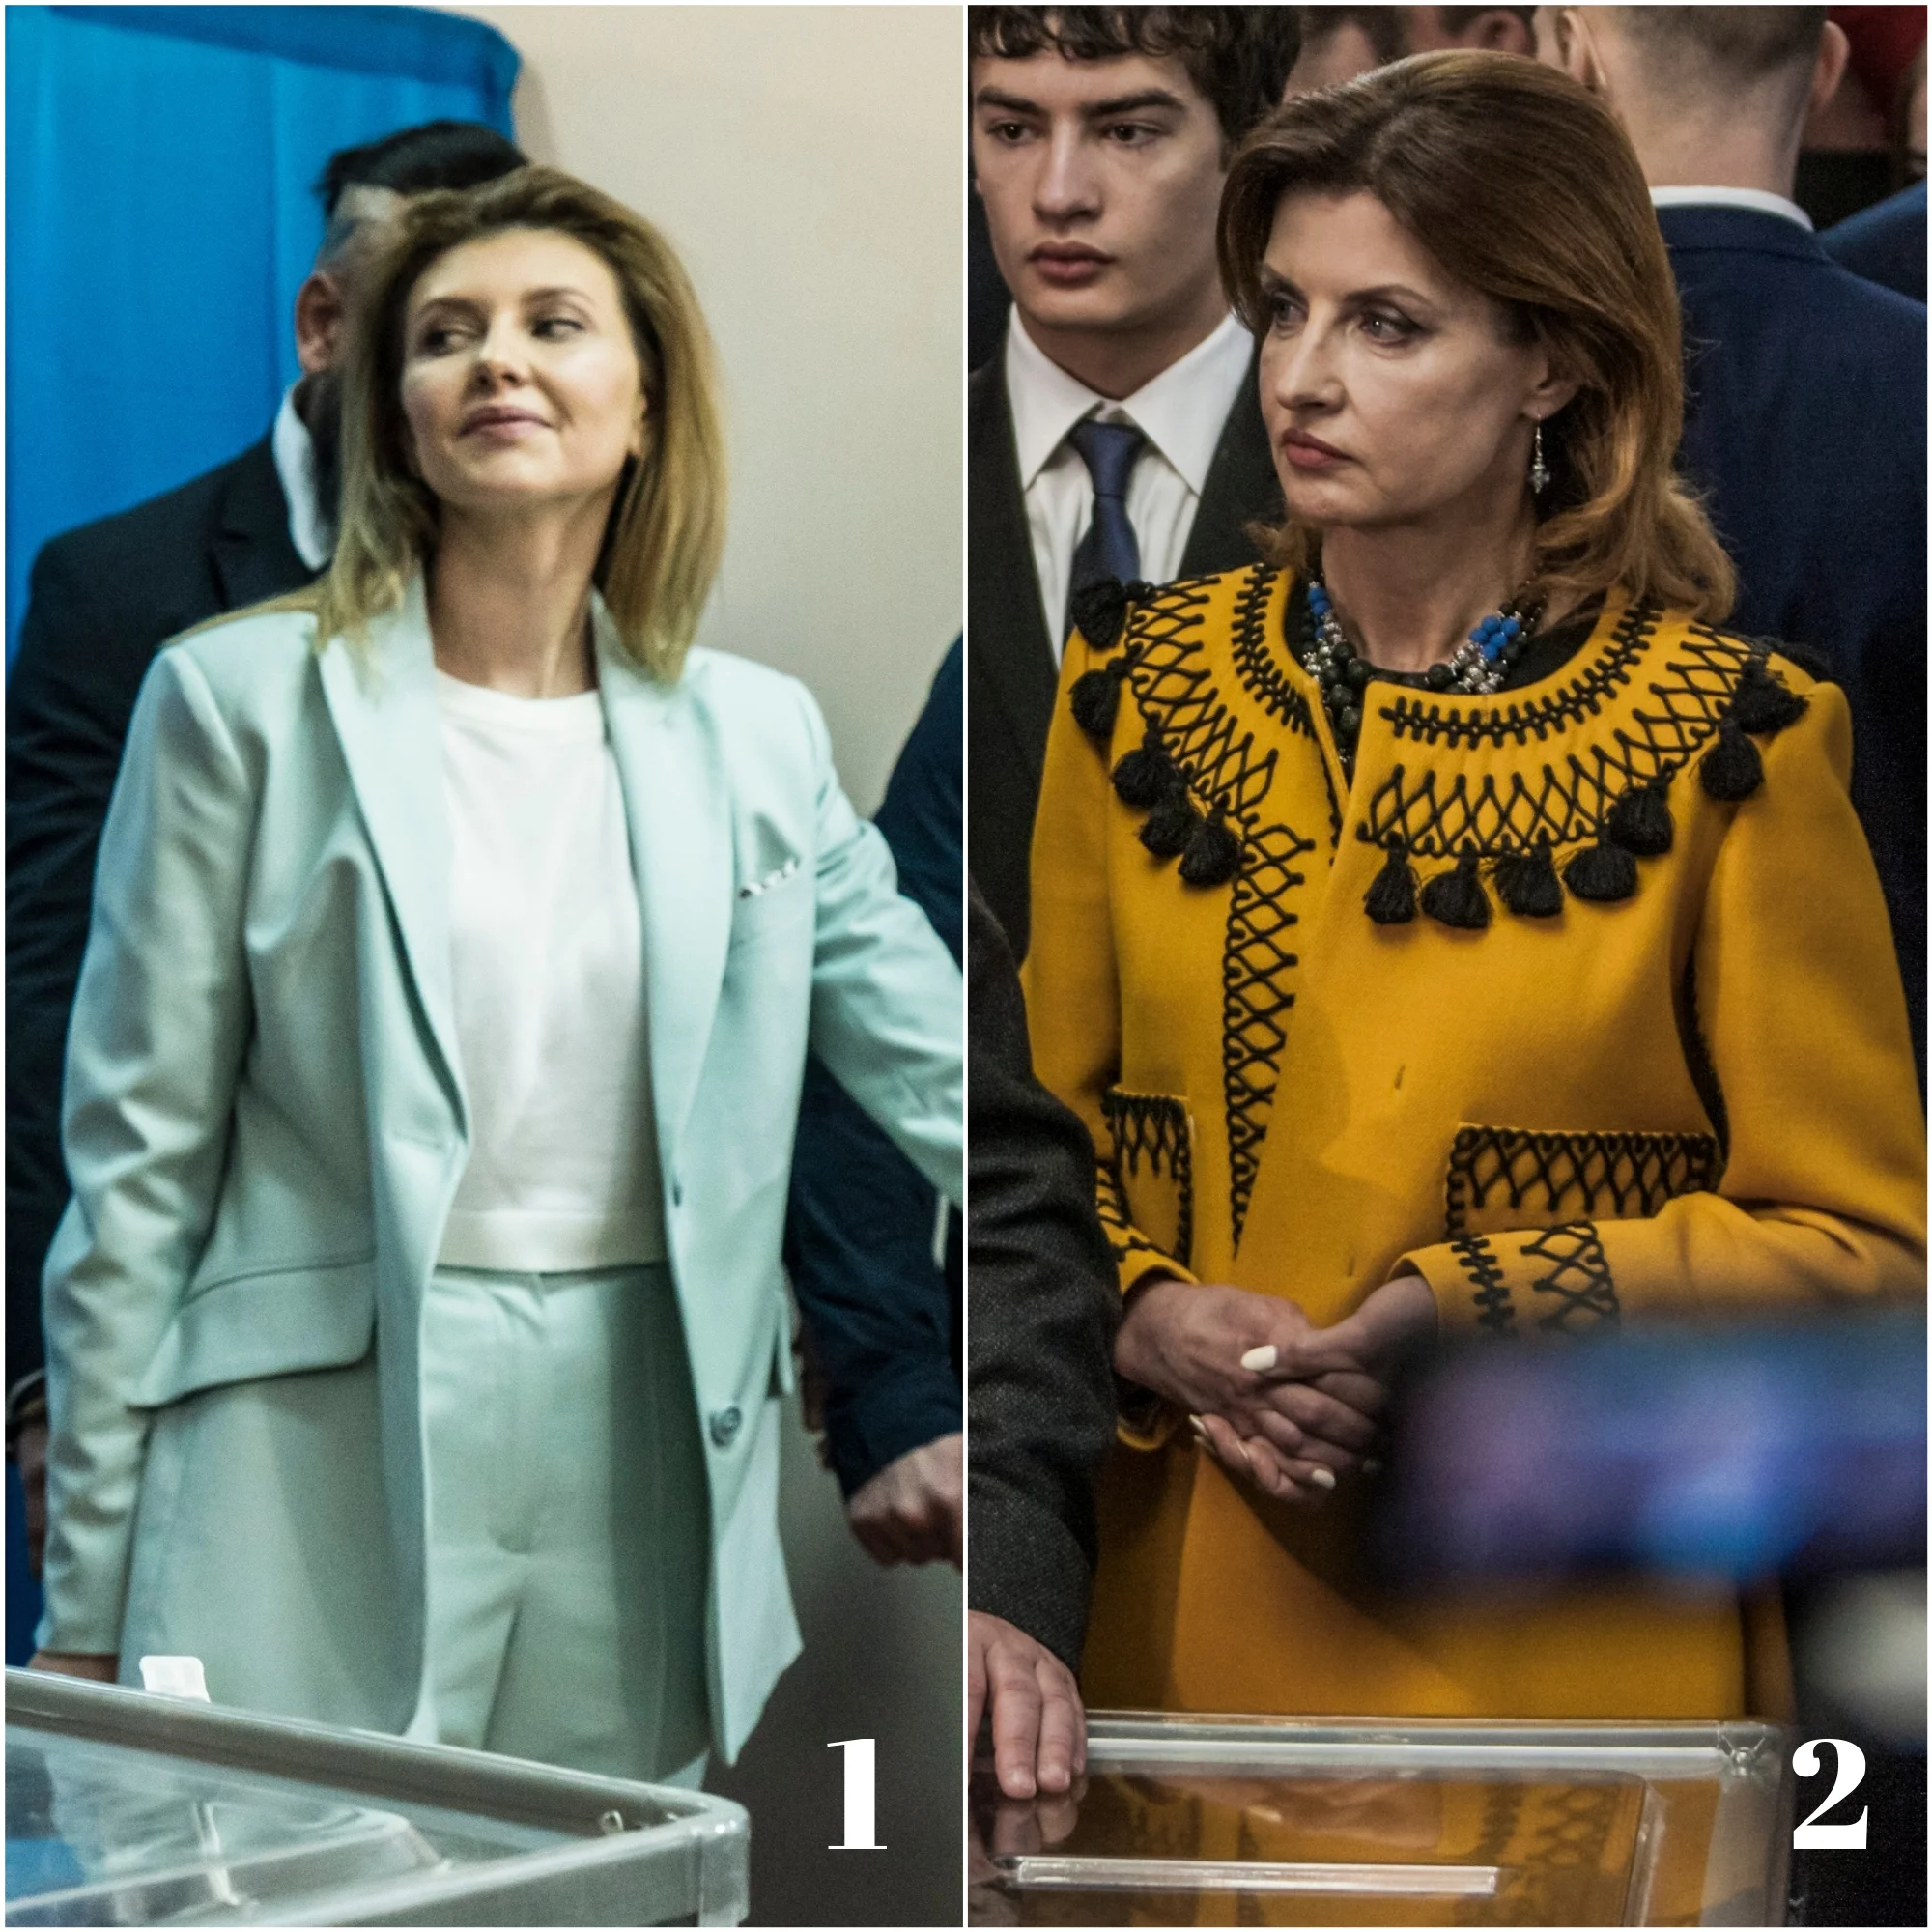 Порошенко vs. Зеленская: выбери лучший look для второго тура выборов президента Украины - фото 430250